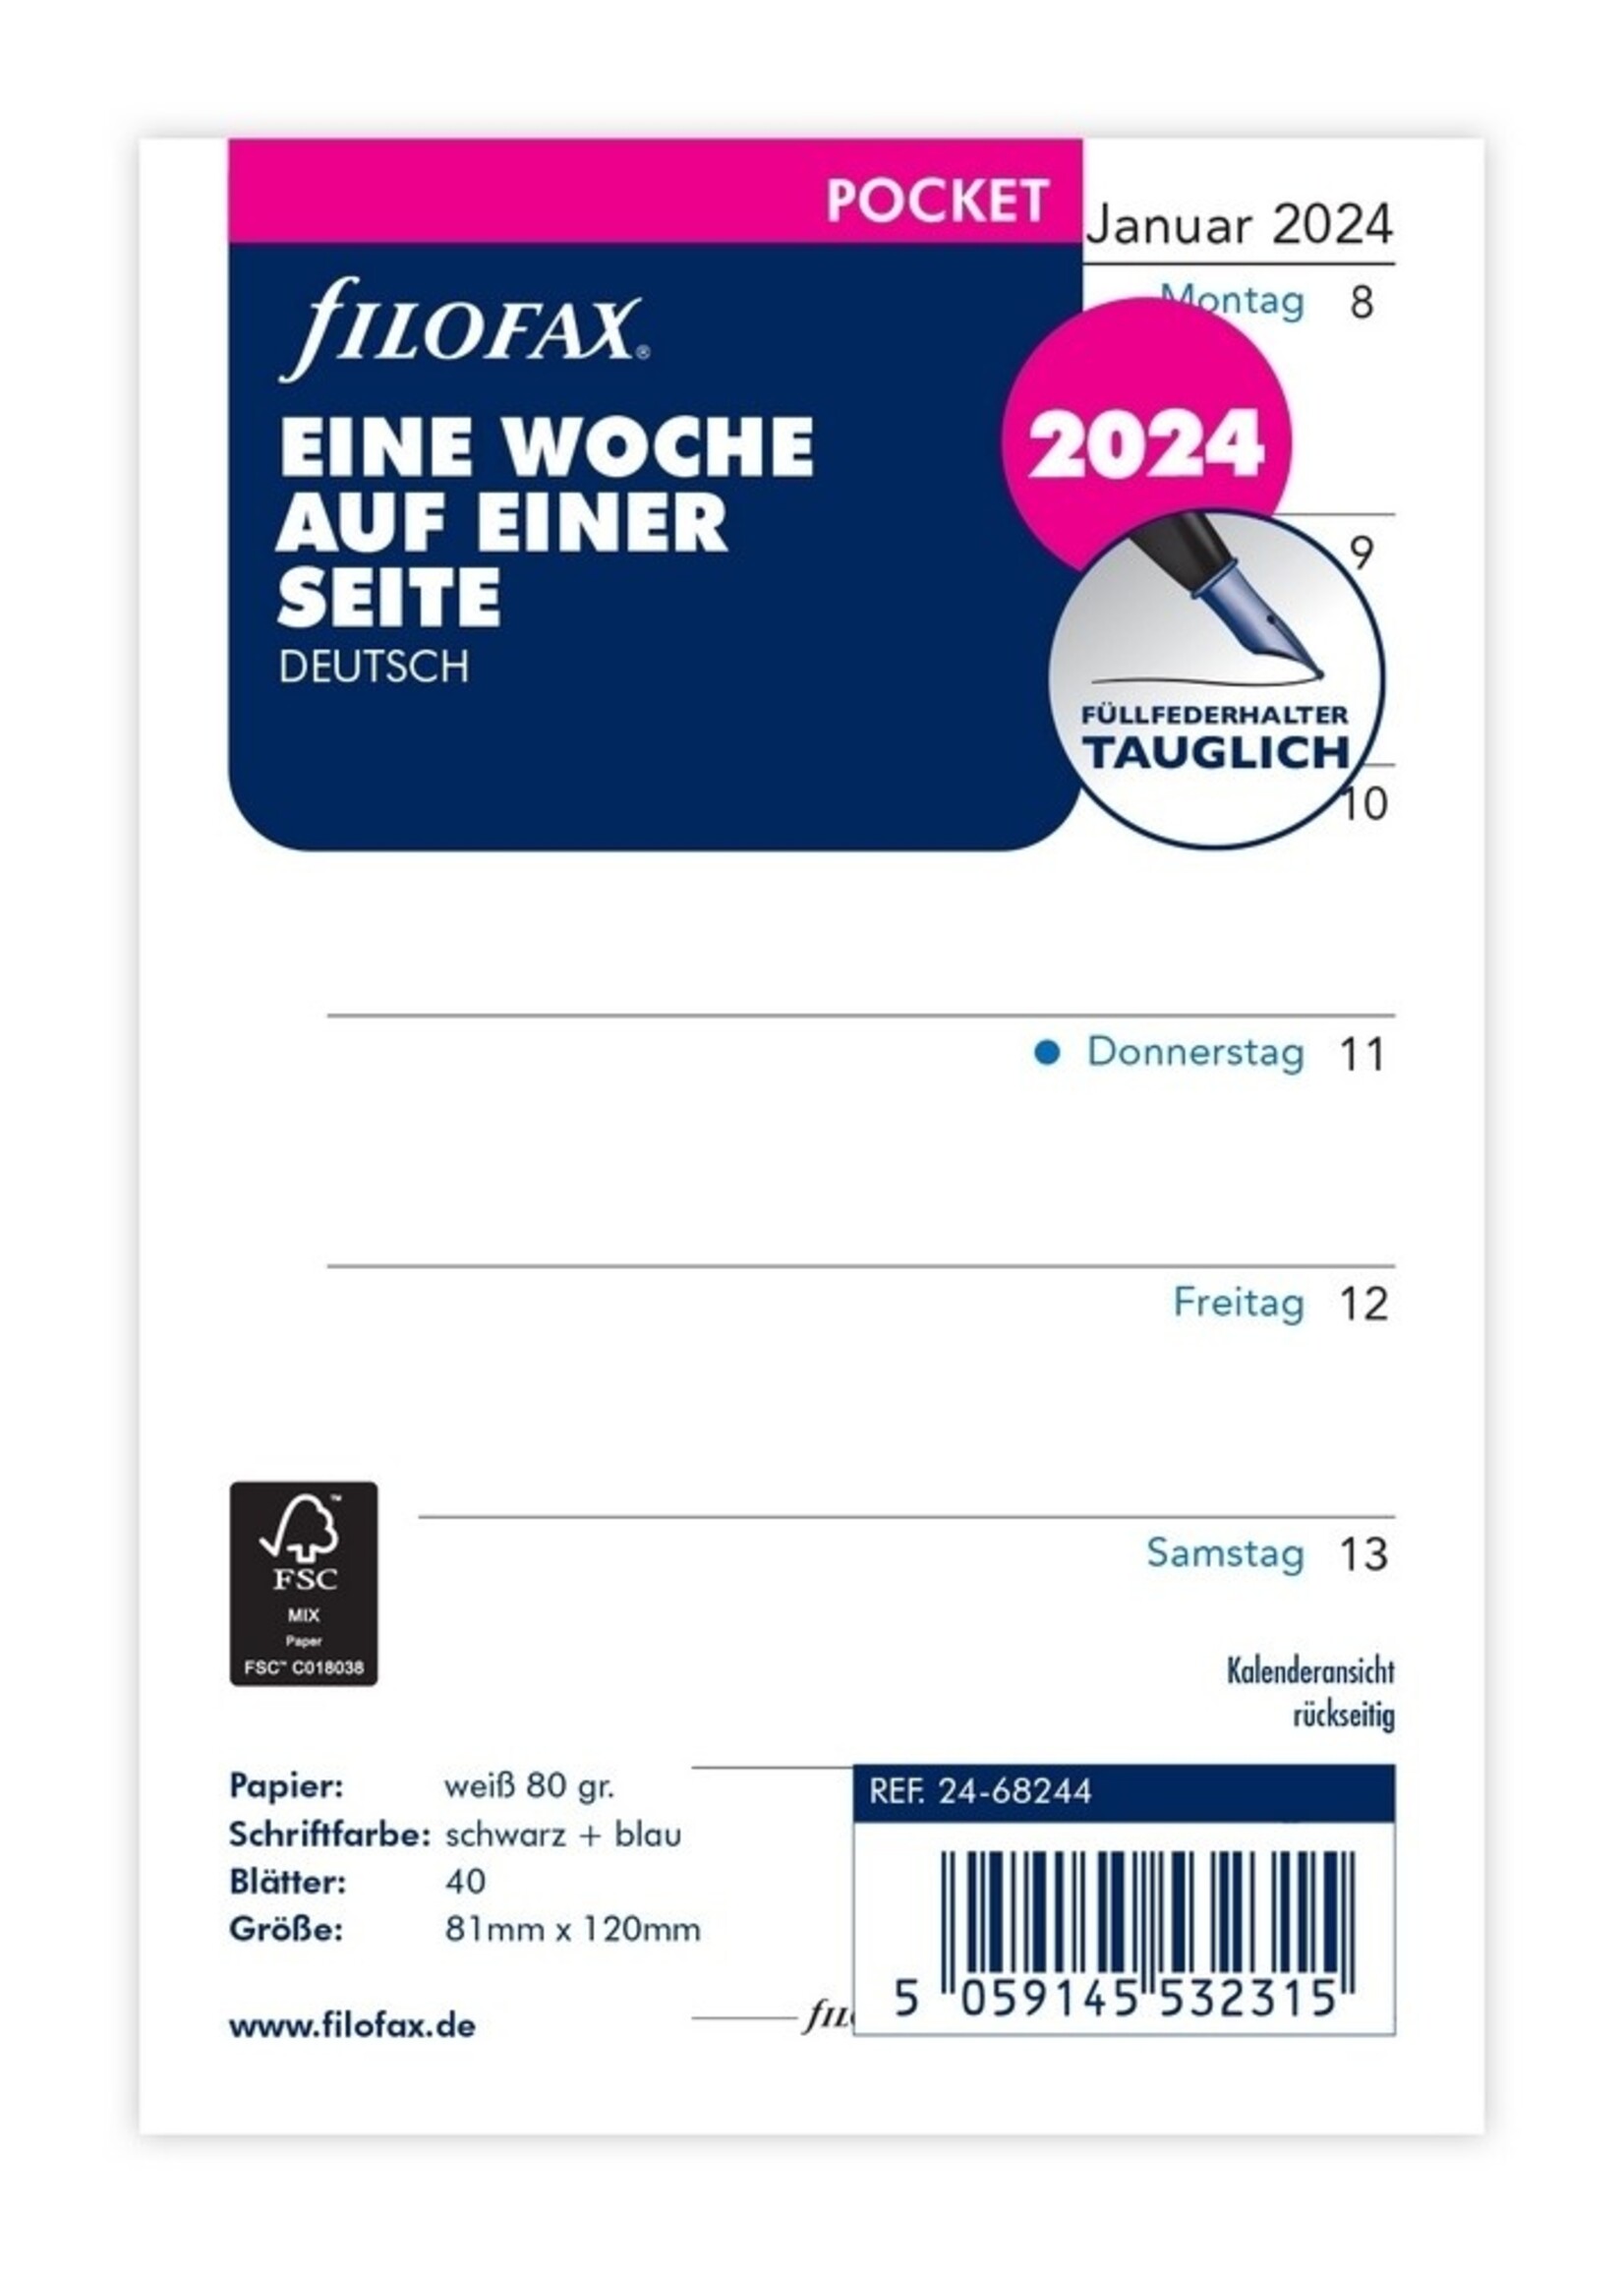 Filofax Pocket Kalendereinlage 2024 1 Woche auf 1 Seite Weiß Deutsch